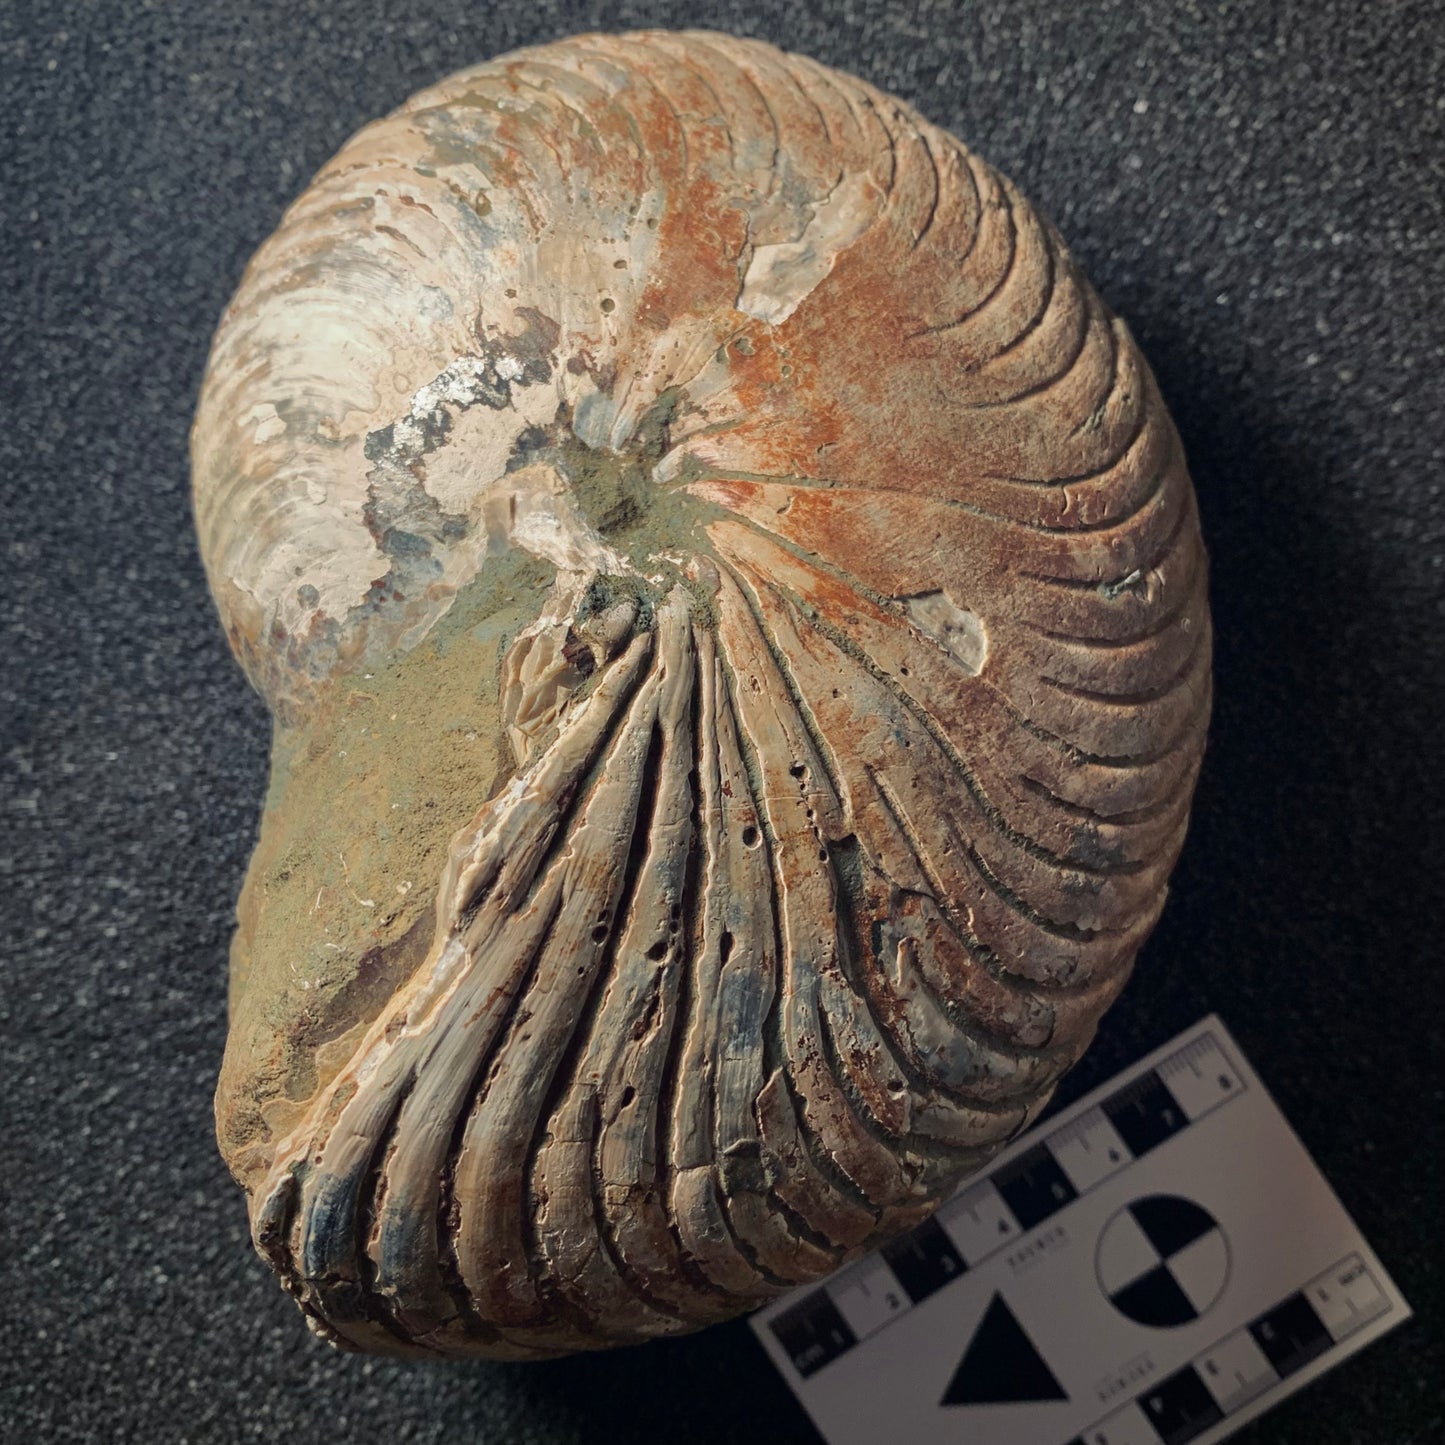 F291 | Nautilus | Cenoceras sp.